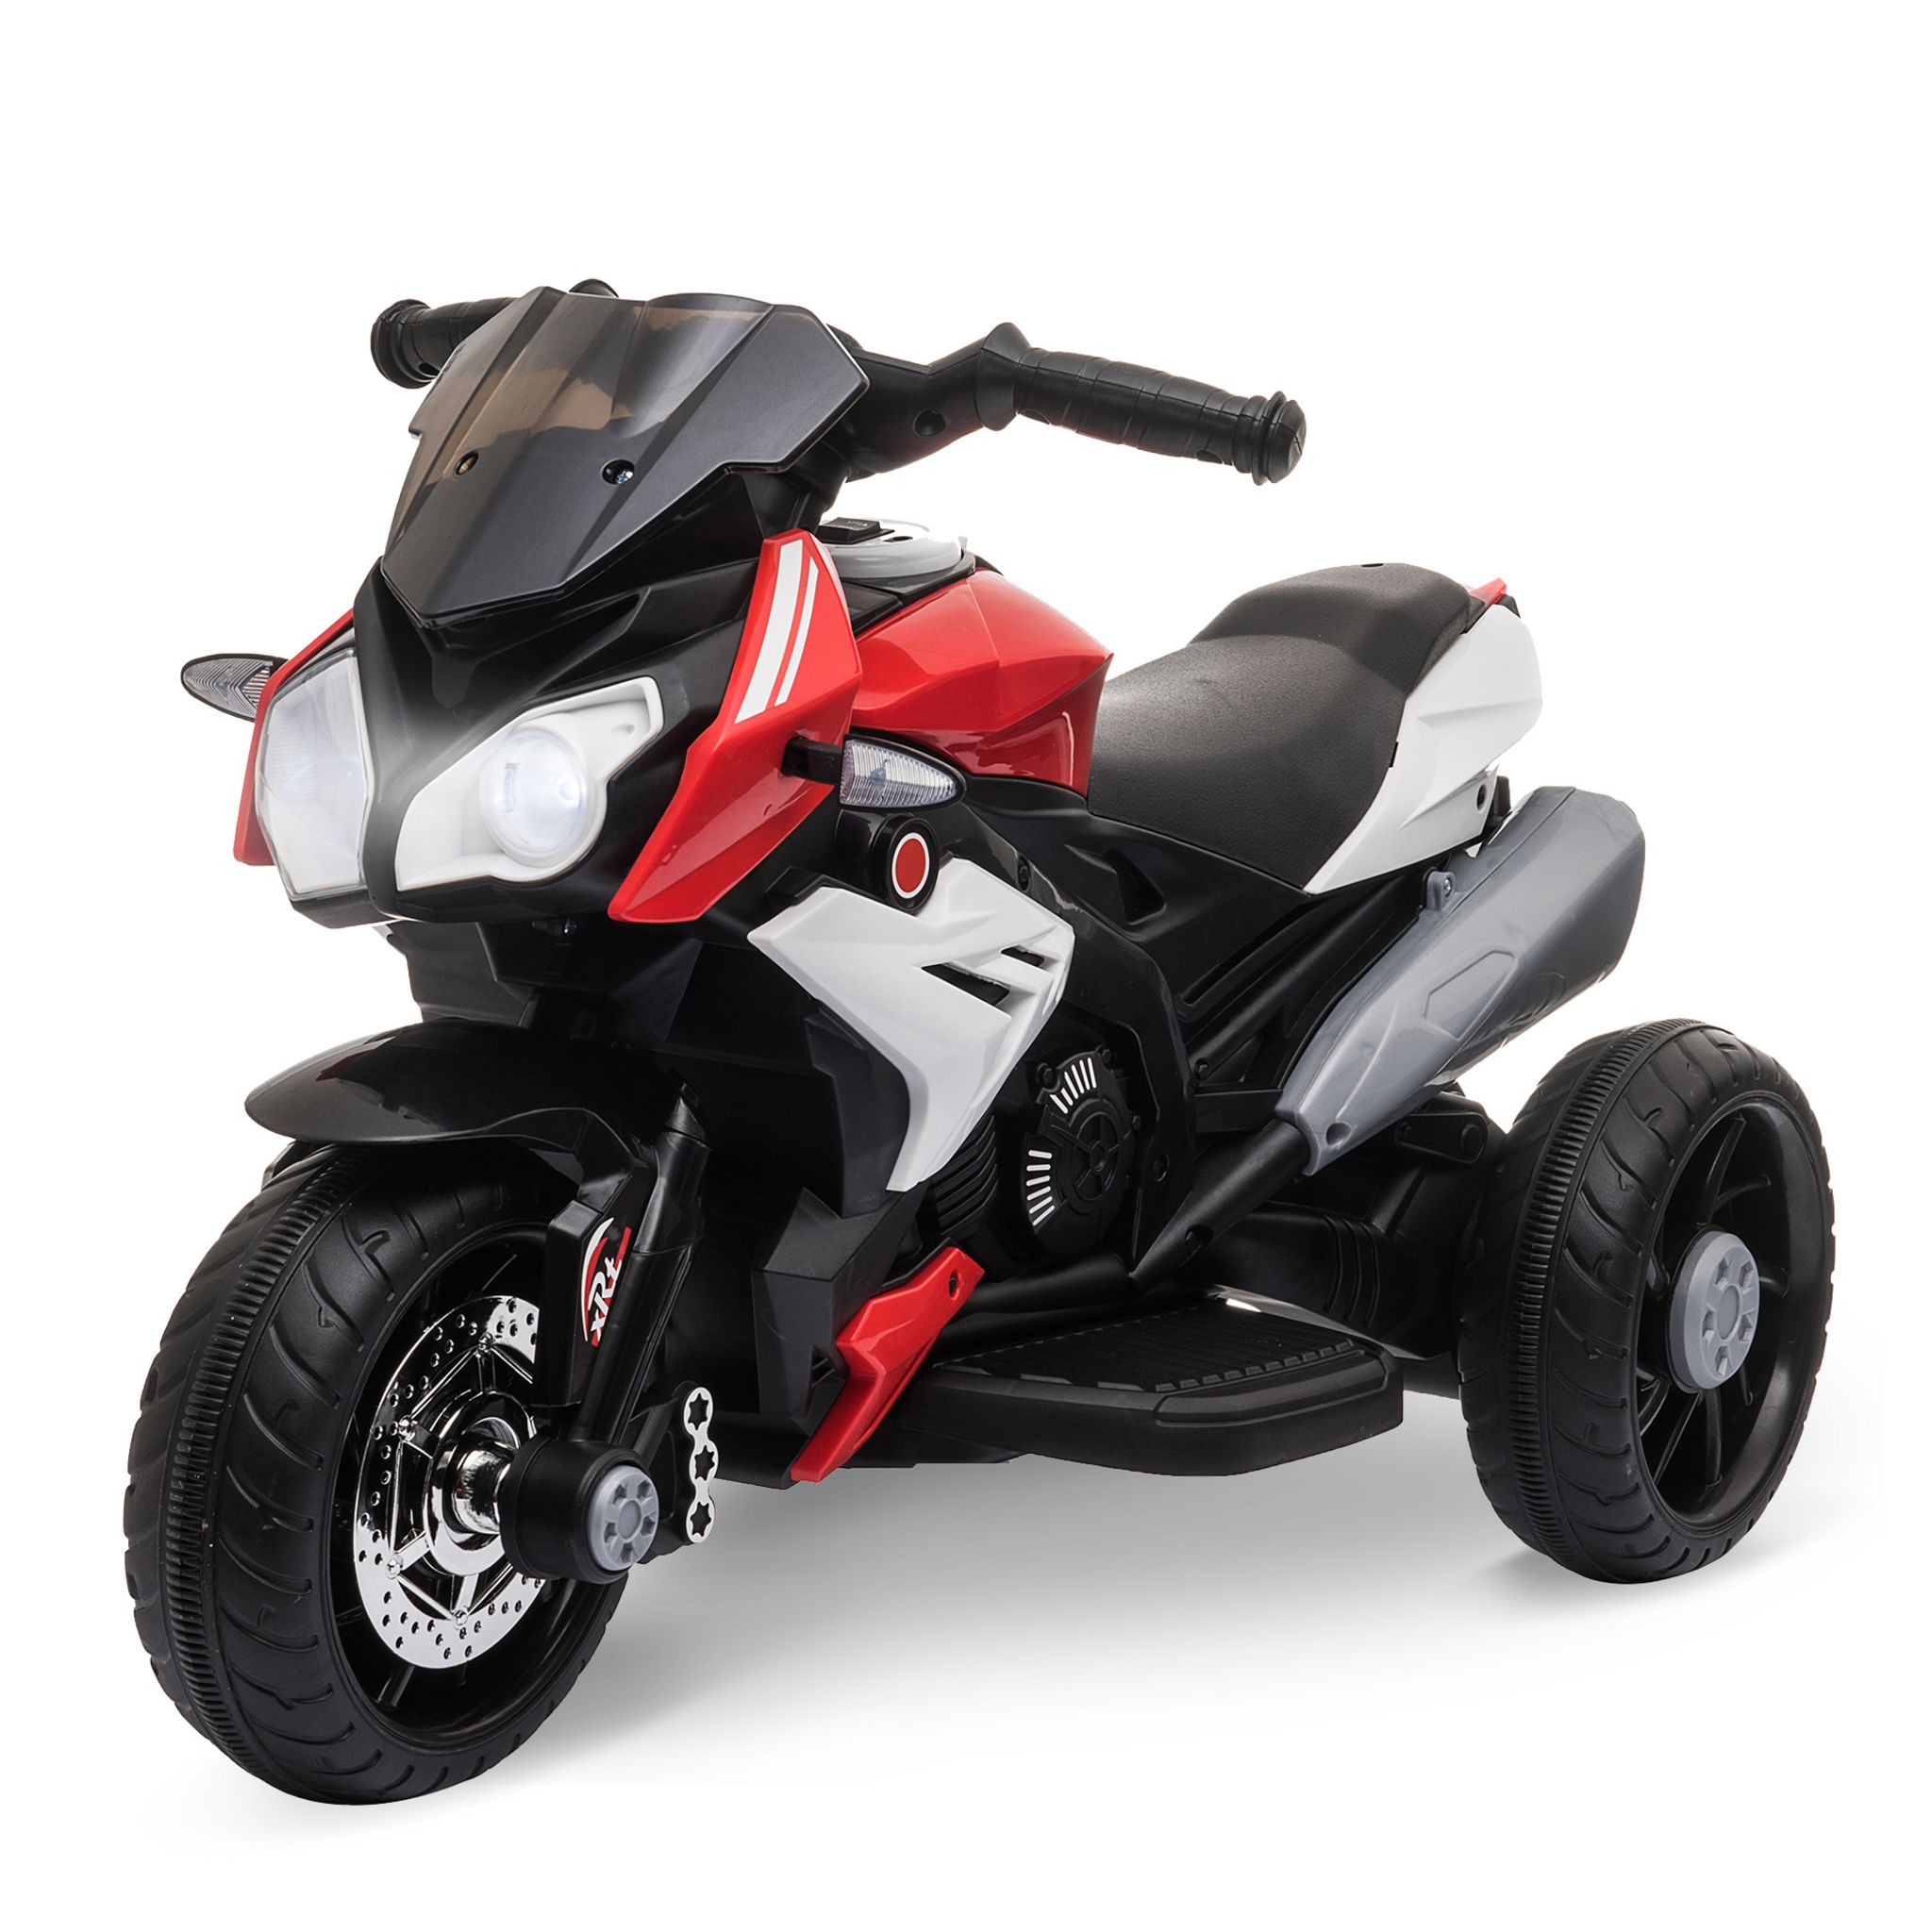 HOMCOM HOMCOM Moto scooter électrique pour enfants 6 V env. 3 Km/h 3 roues  et topcase effet lumineux et sonore rose pas cher 